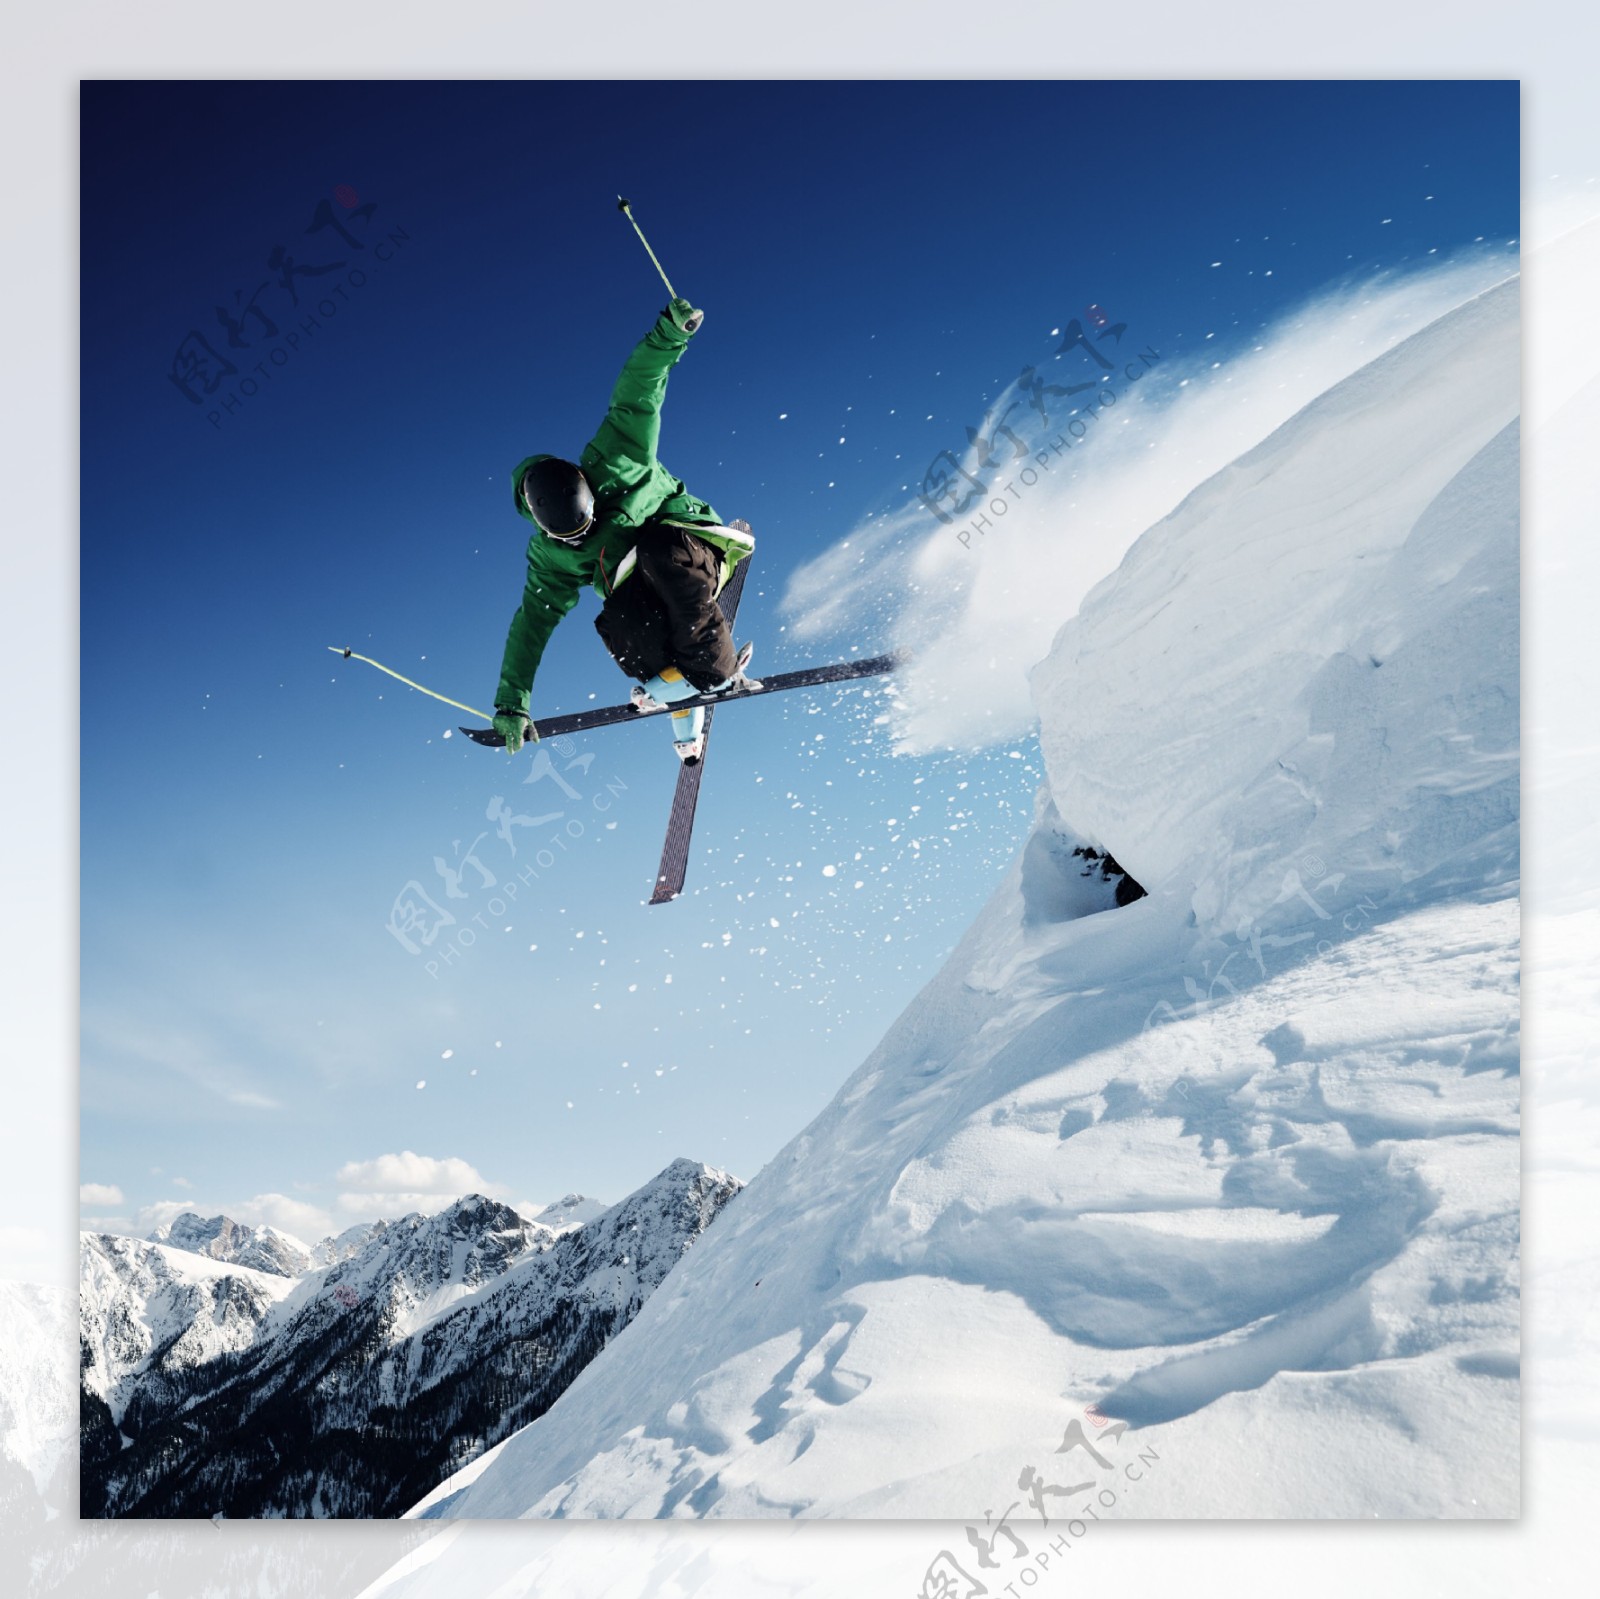 冲下山坡的滑雪运动员图片